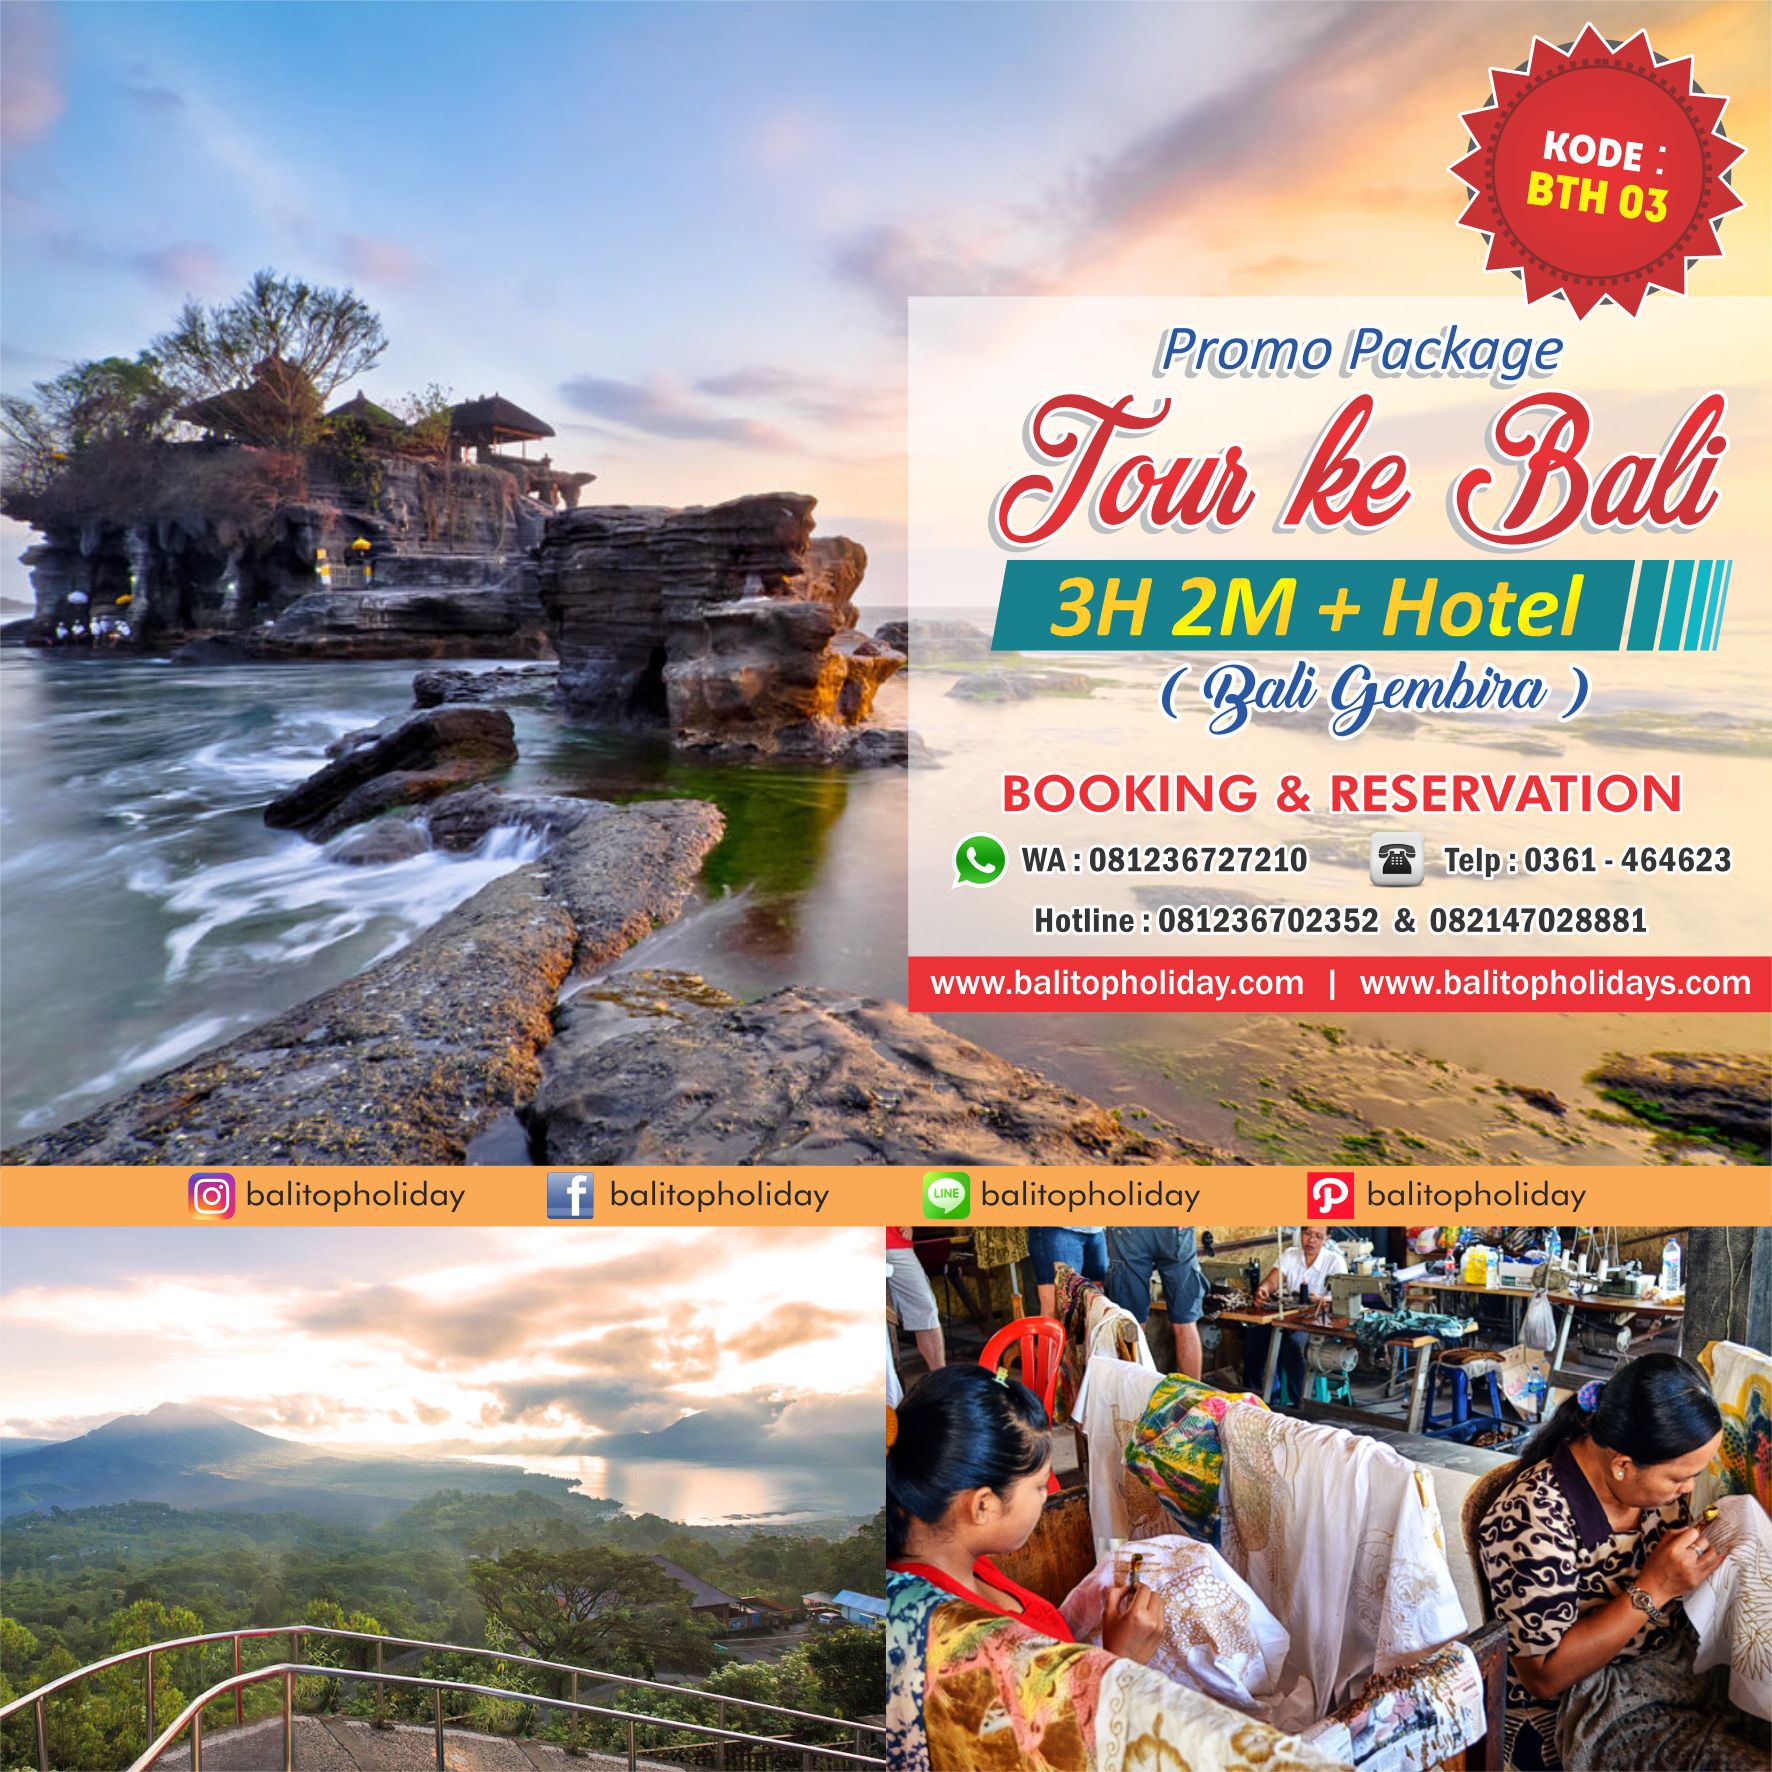 Paket Tour Bali 3H 2M dengan Hotel BTH 03 Bali Gembira